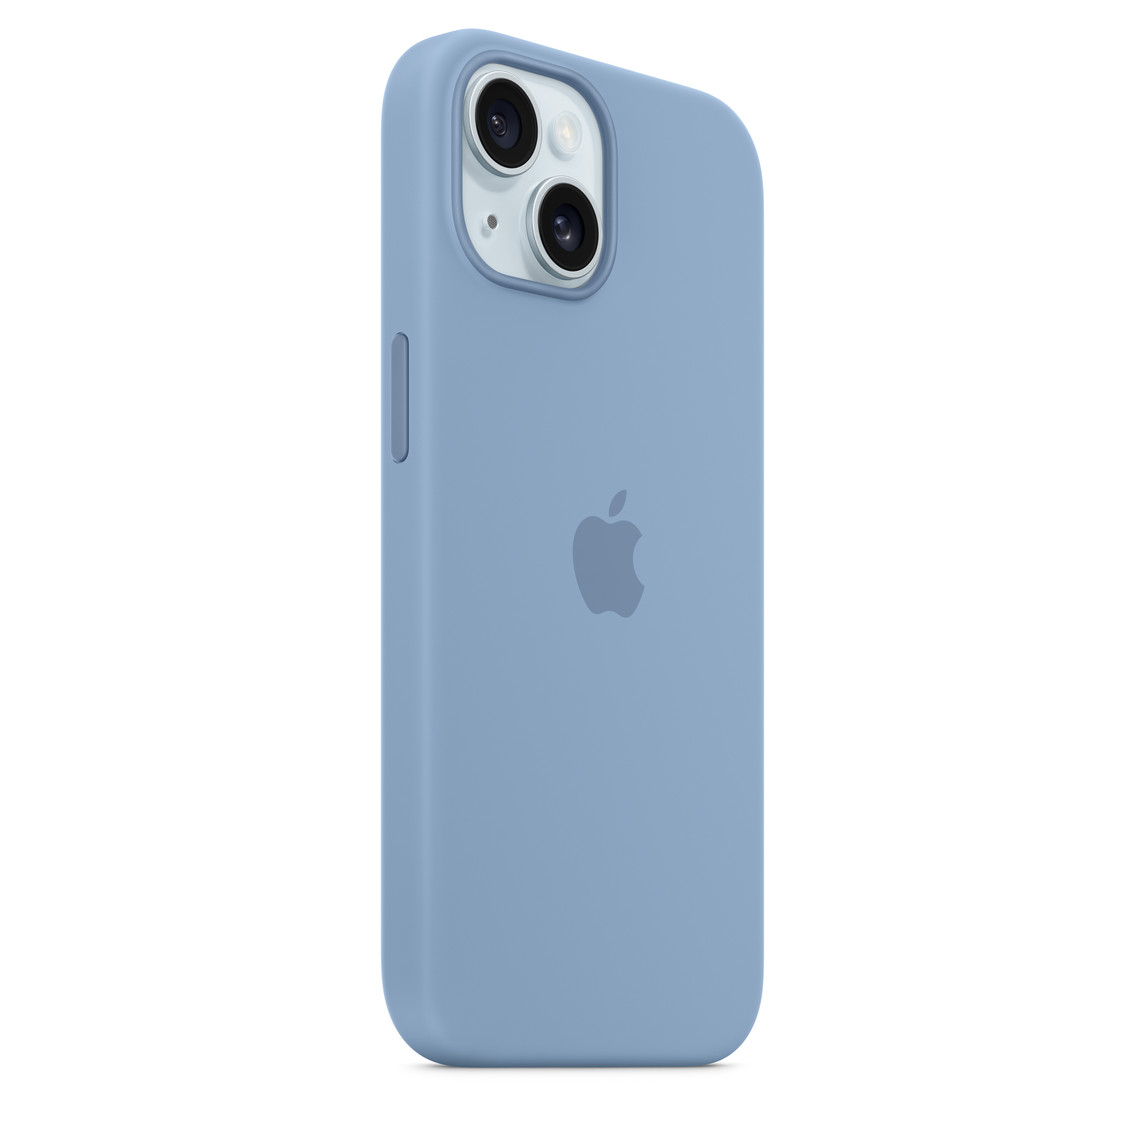 Funda de Silicona tacto suave para iPhone 11 color Azul